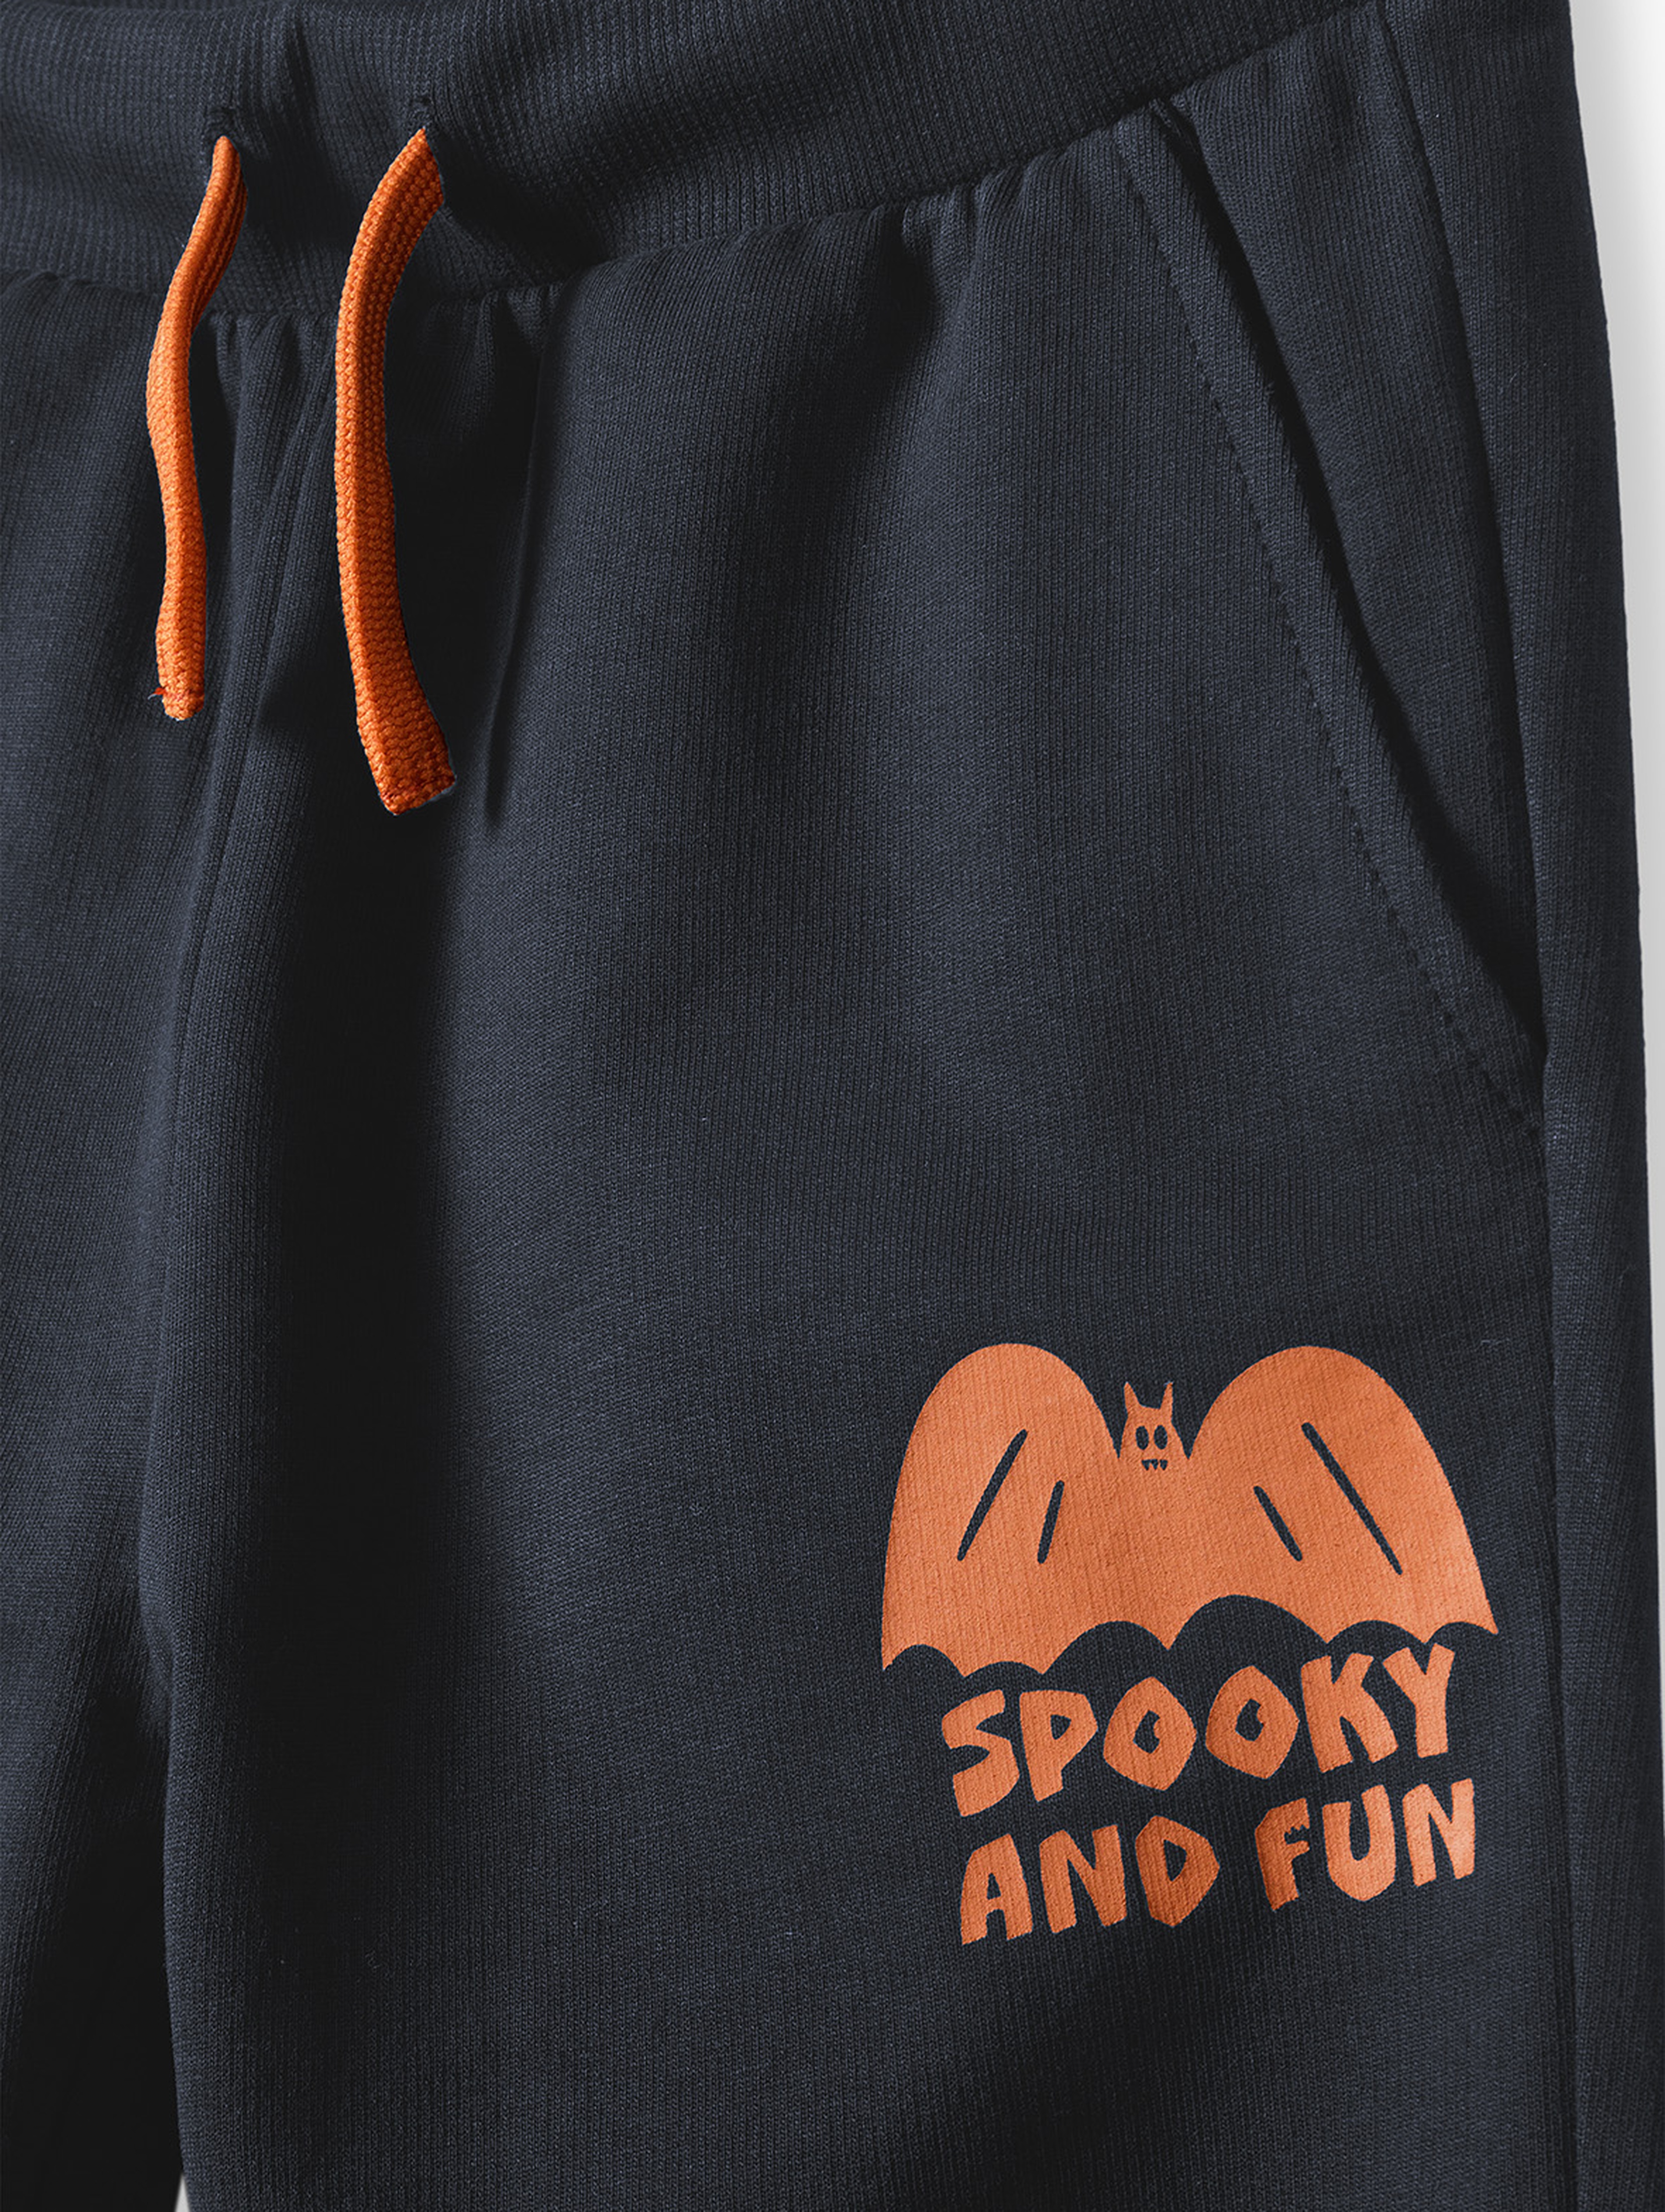 Granatowe spodnie dresowe chłopięce Halloween - spooky and fun - 5.10.15.